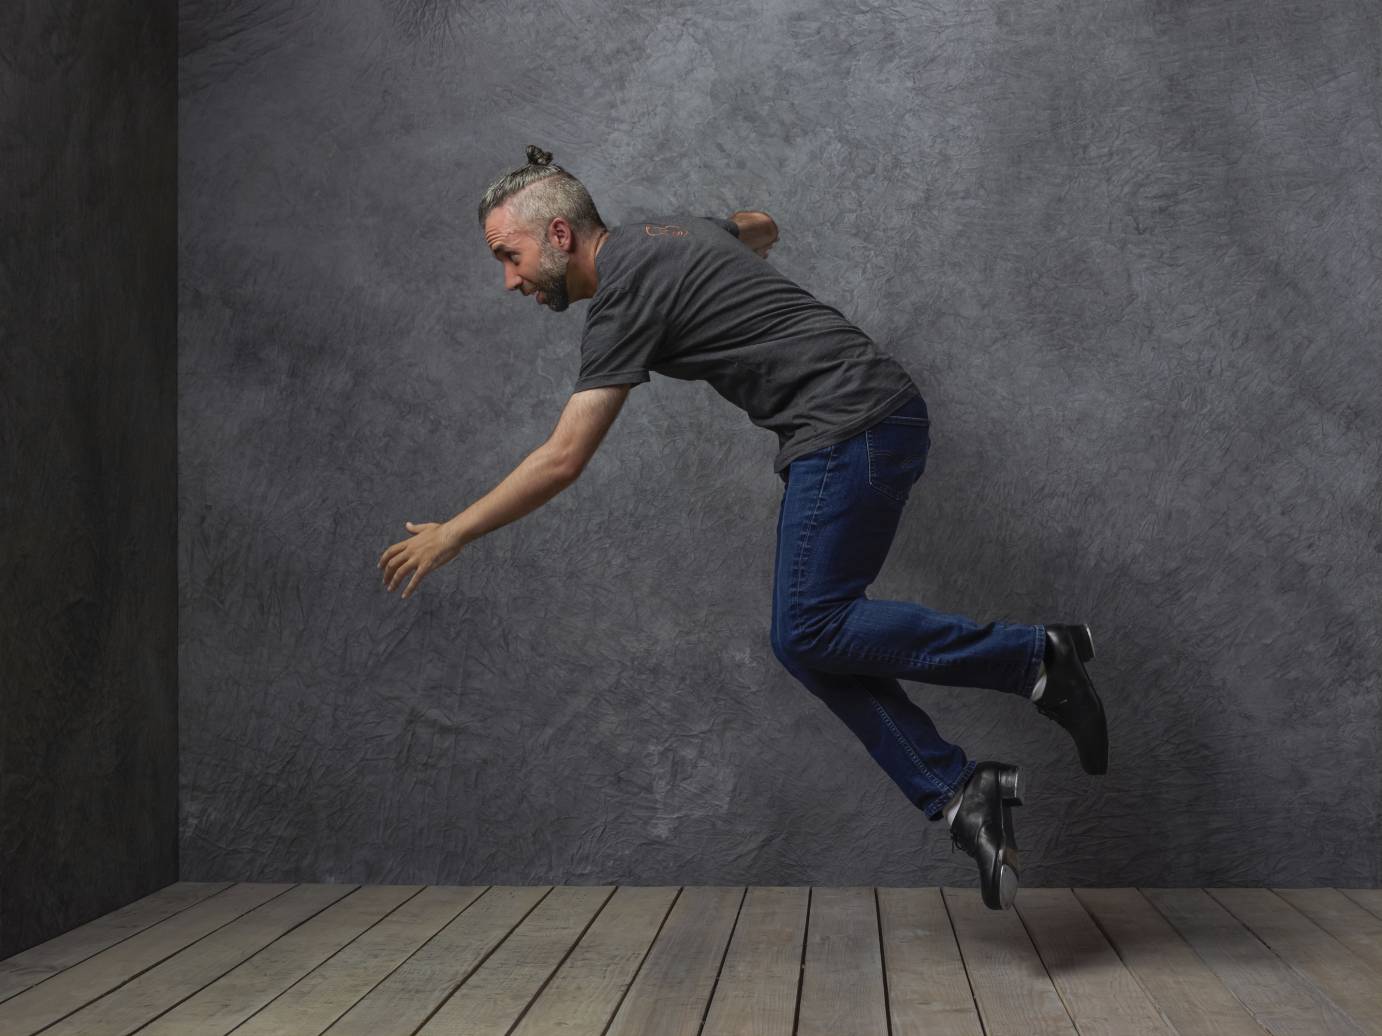 A man with gray hair in a bun tap dances